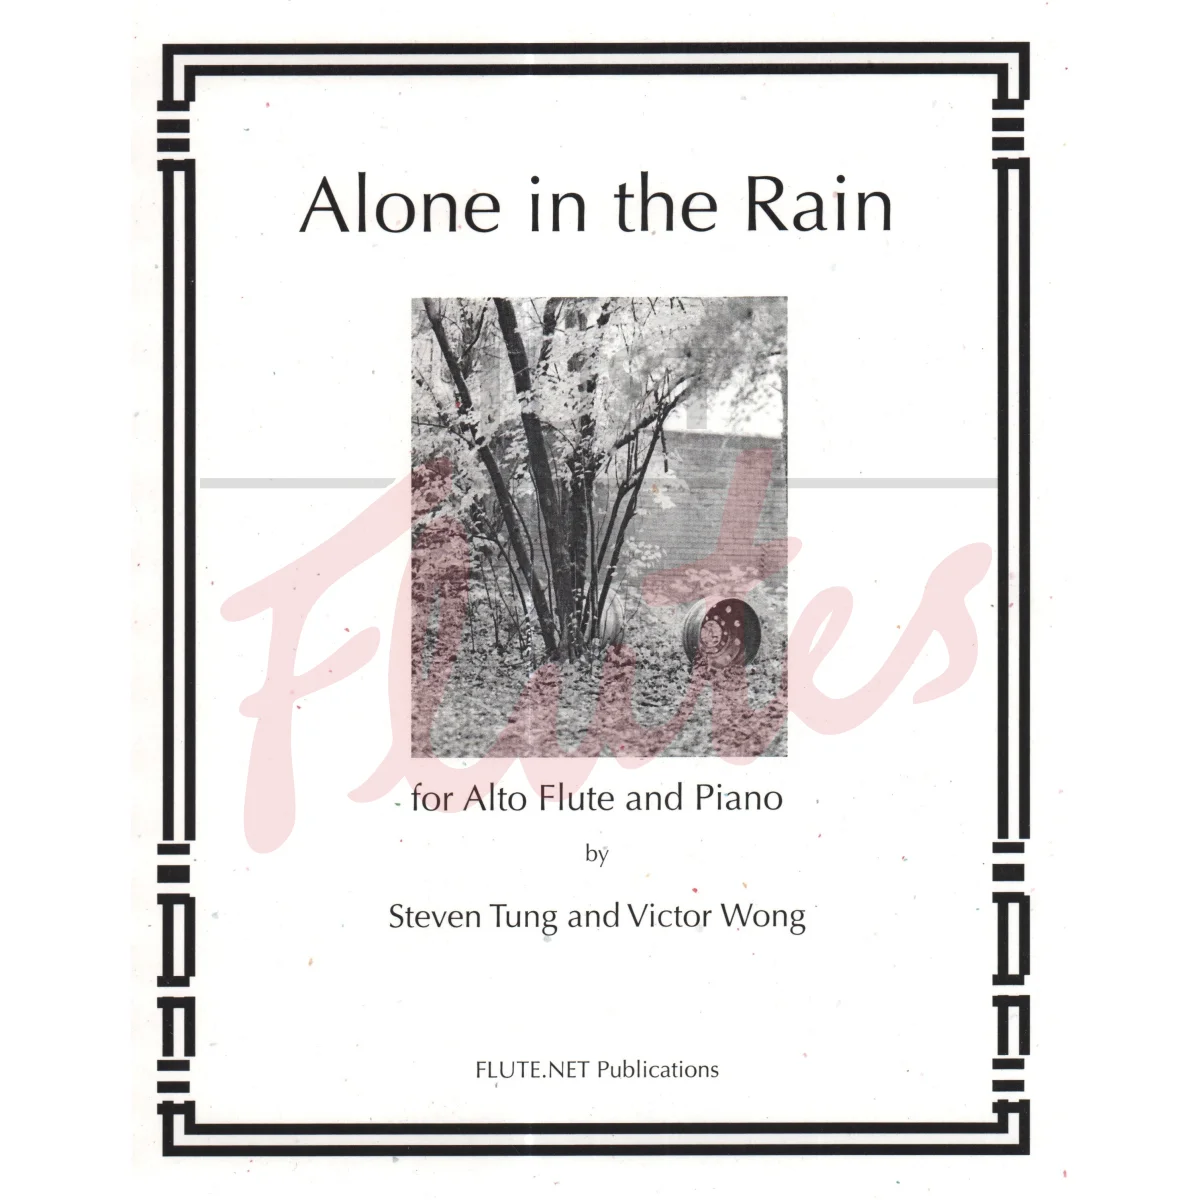 Alone in the Rain for Alto Flute and Piano